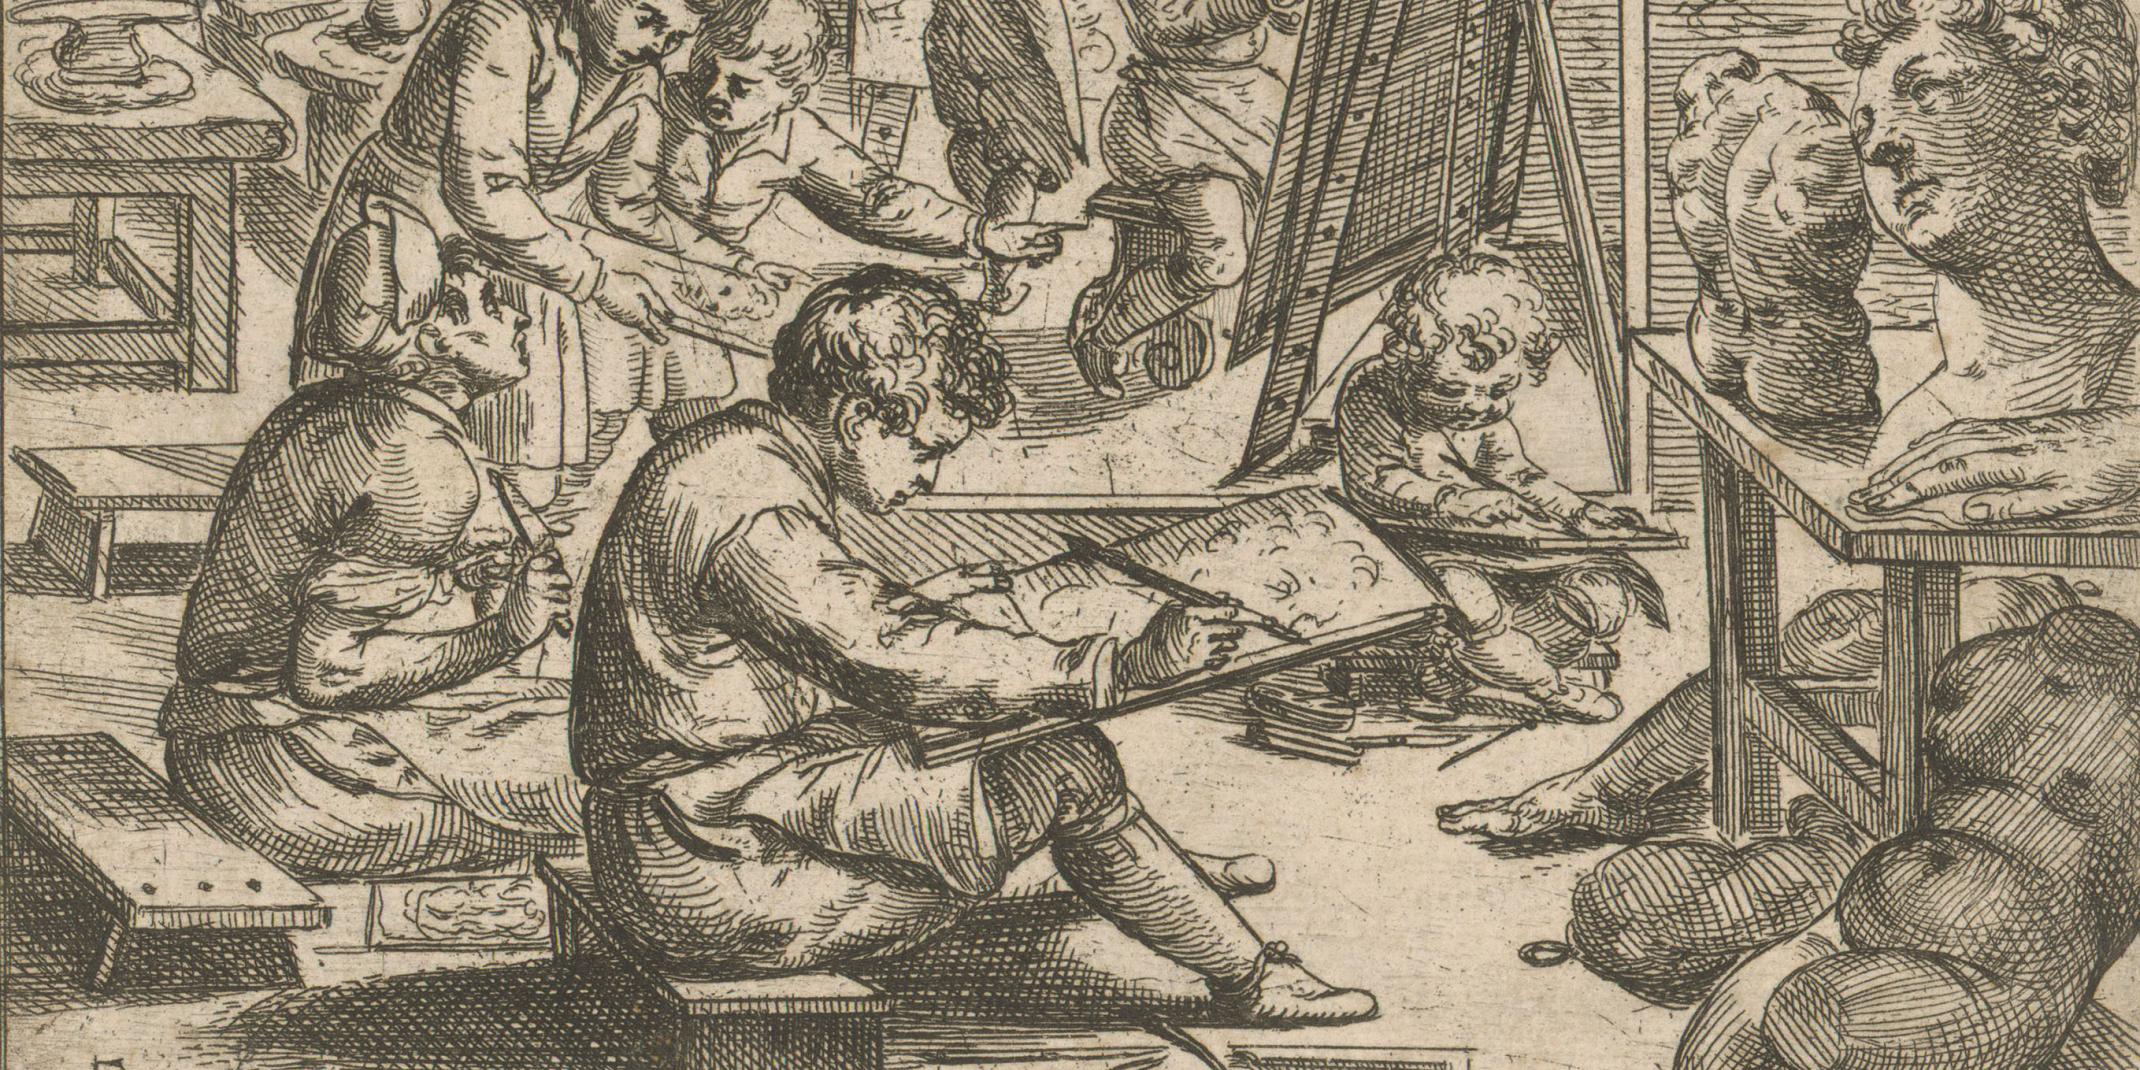 Odoardo Fialetti, Radierer (1573–1638) Schüler beim Zeichnen, 1608 Radierung, 11 x 15,4 cm Hamburger Kunsthalle, Kupferstich-kabinett © Hamburger Kunsthalle / bpk